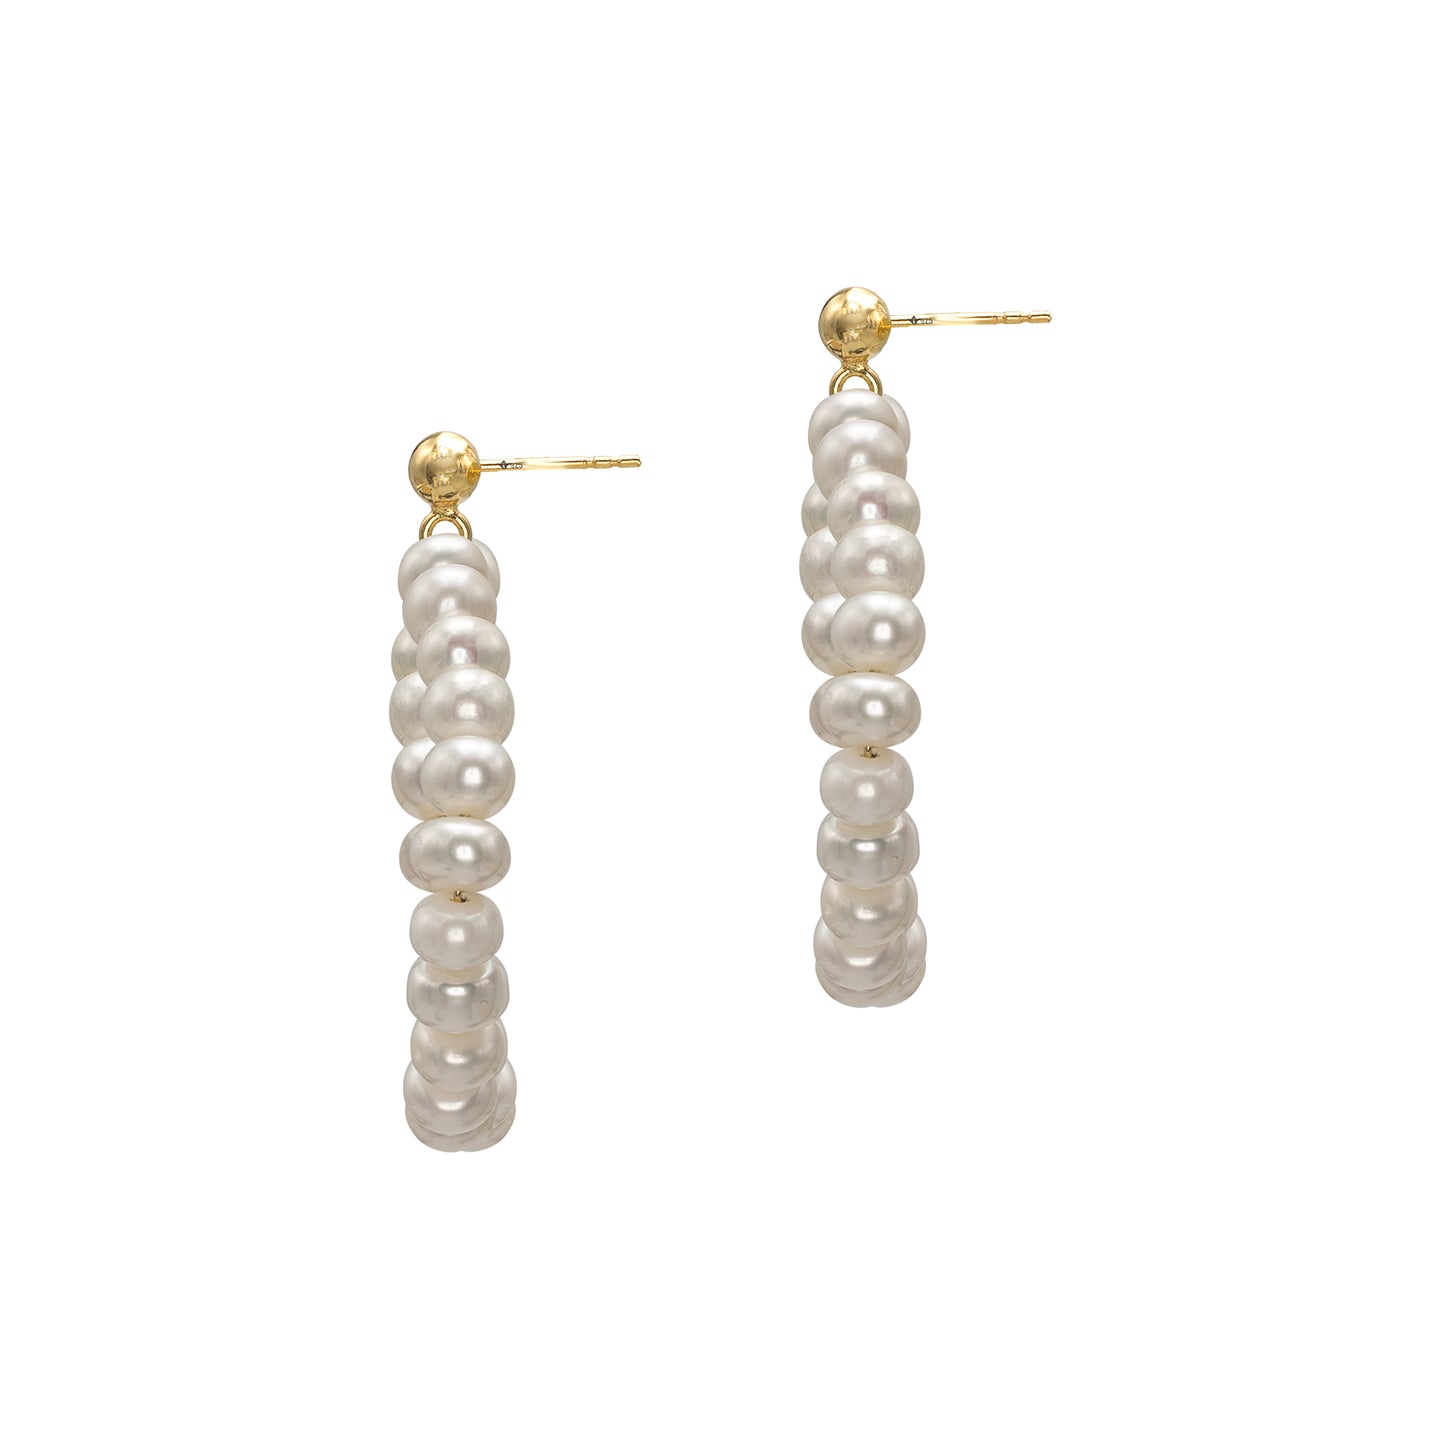 Cercei rotunzi cu perle si argint Tender - placati aur galben 18K